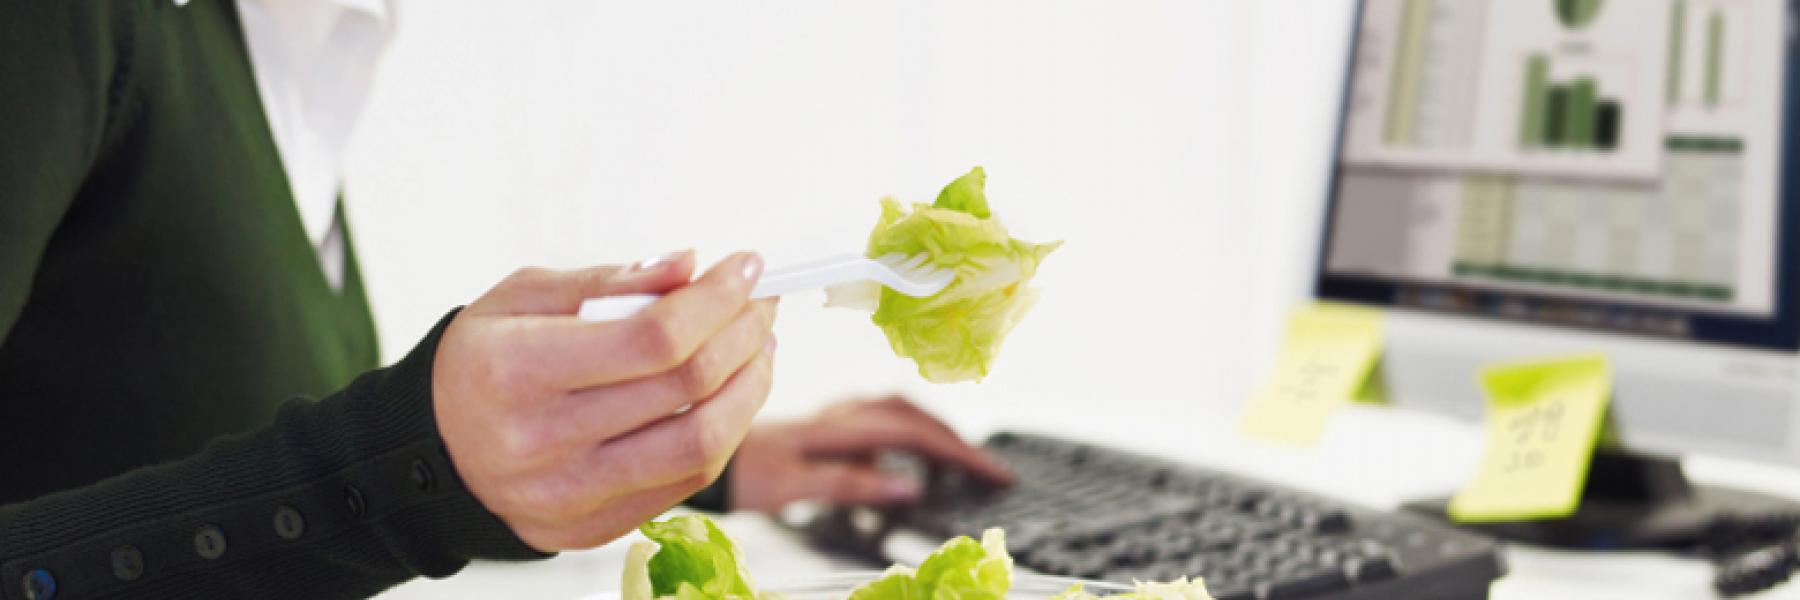 6 نصائح لضمان سلامة الطعام الذي تتناوله في المكتب